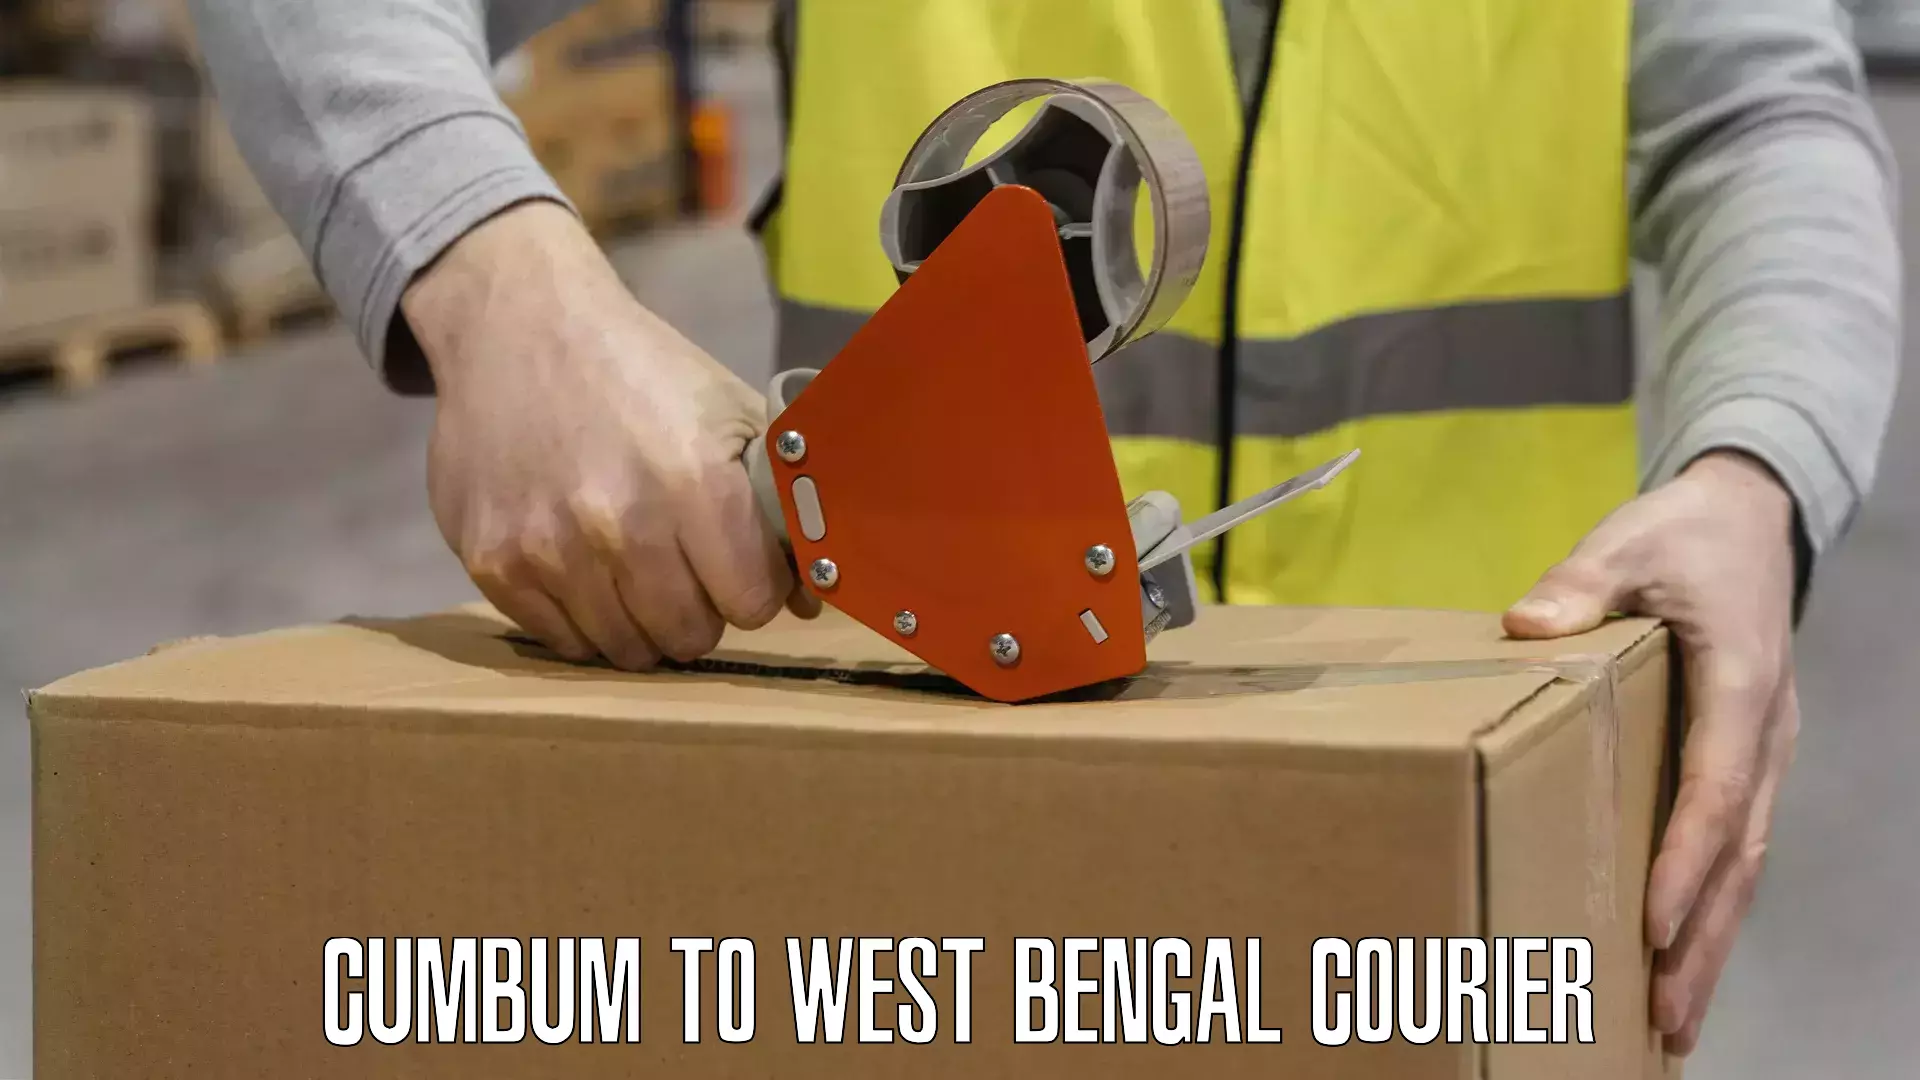 Doorstep delivery service Cumbum to West Bengal